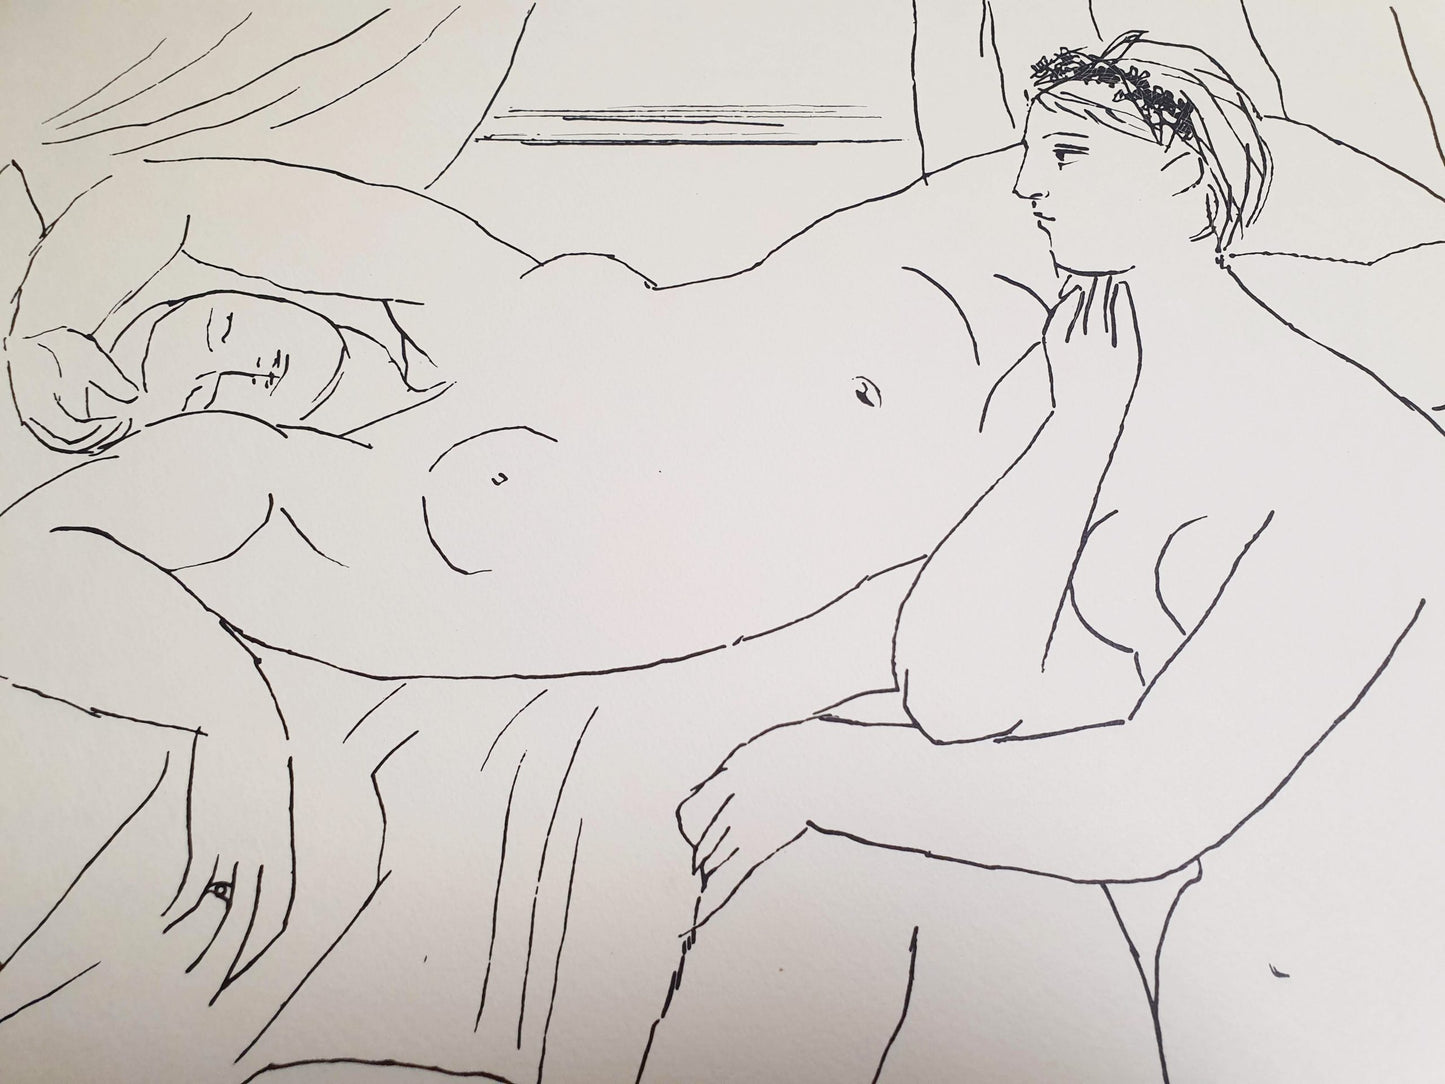 Pablo Picasso - Contemplation (1931)